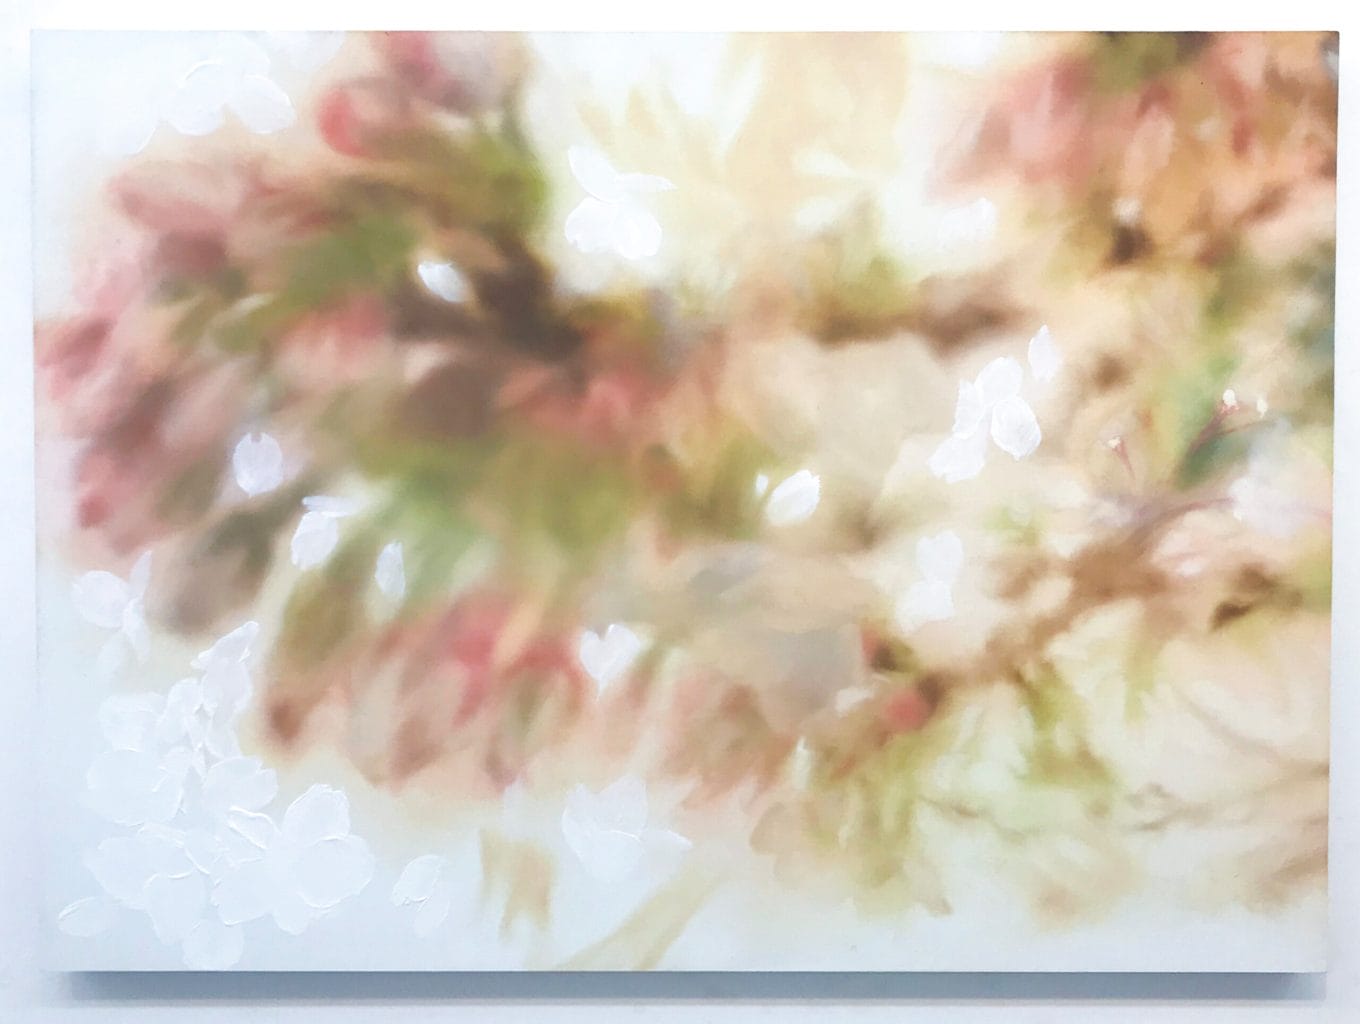 ソフトフォーカスのような質感の油彩で表現する船越菫の個展「アーキタイプの露光面」、SUNABAギャラリーにて開催。